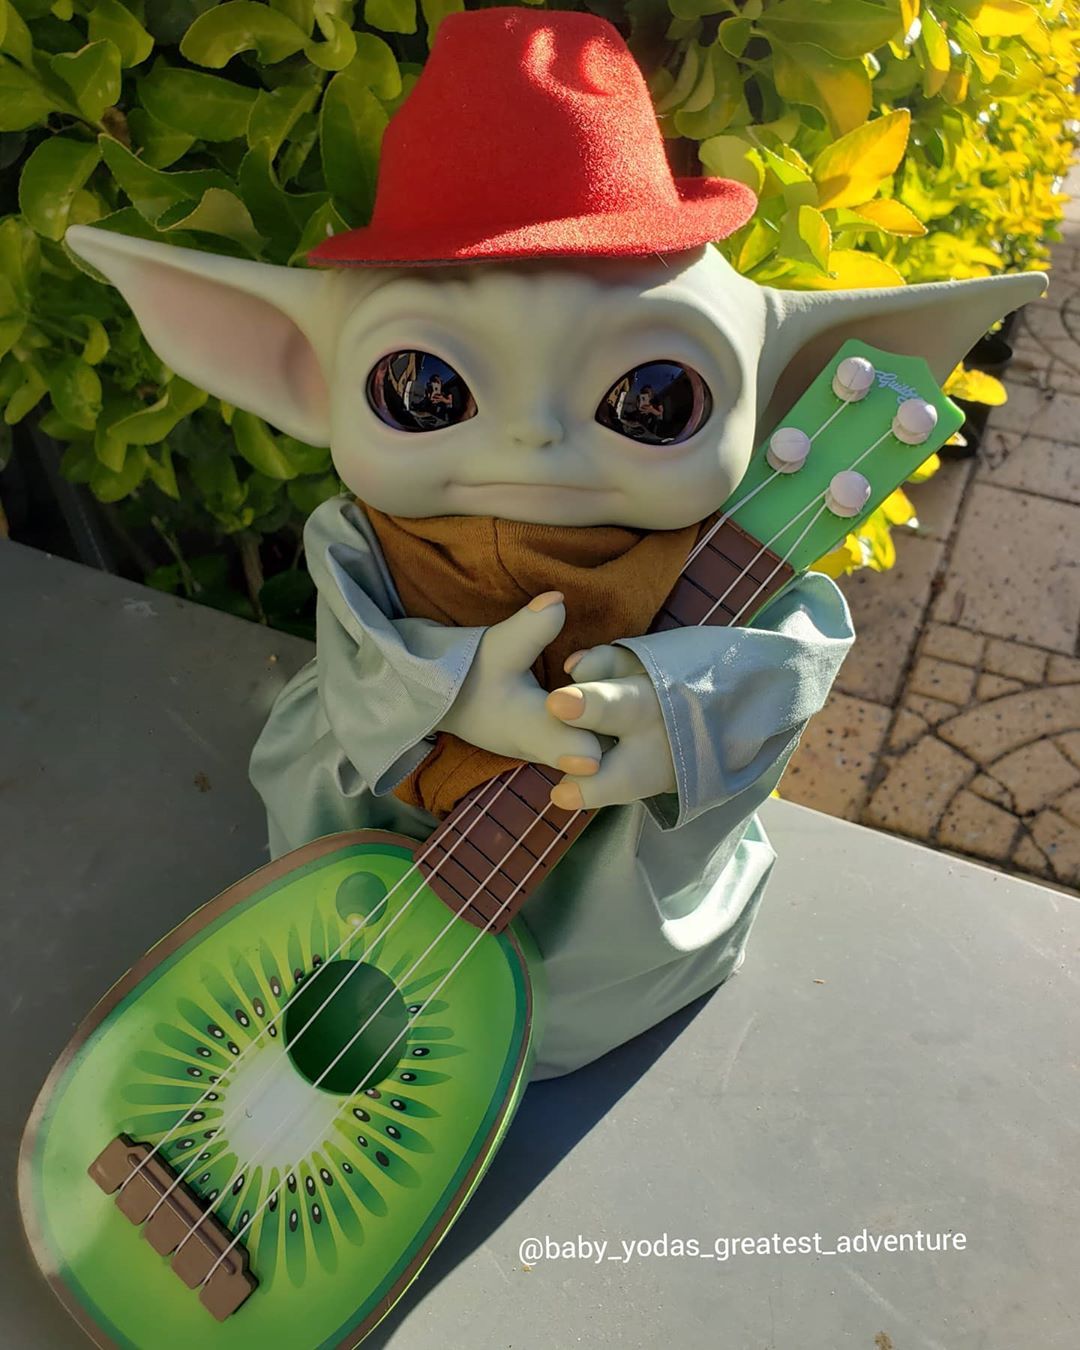 Baby Yoda's Greatest Adventure on Instagram: “I wuv mi guitarra, I sing all el tiempo